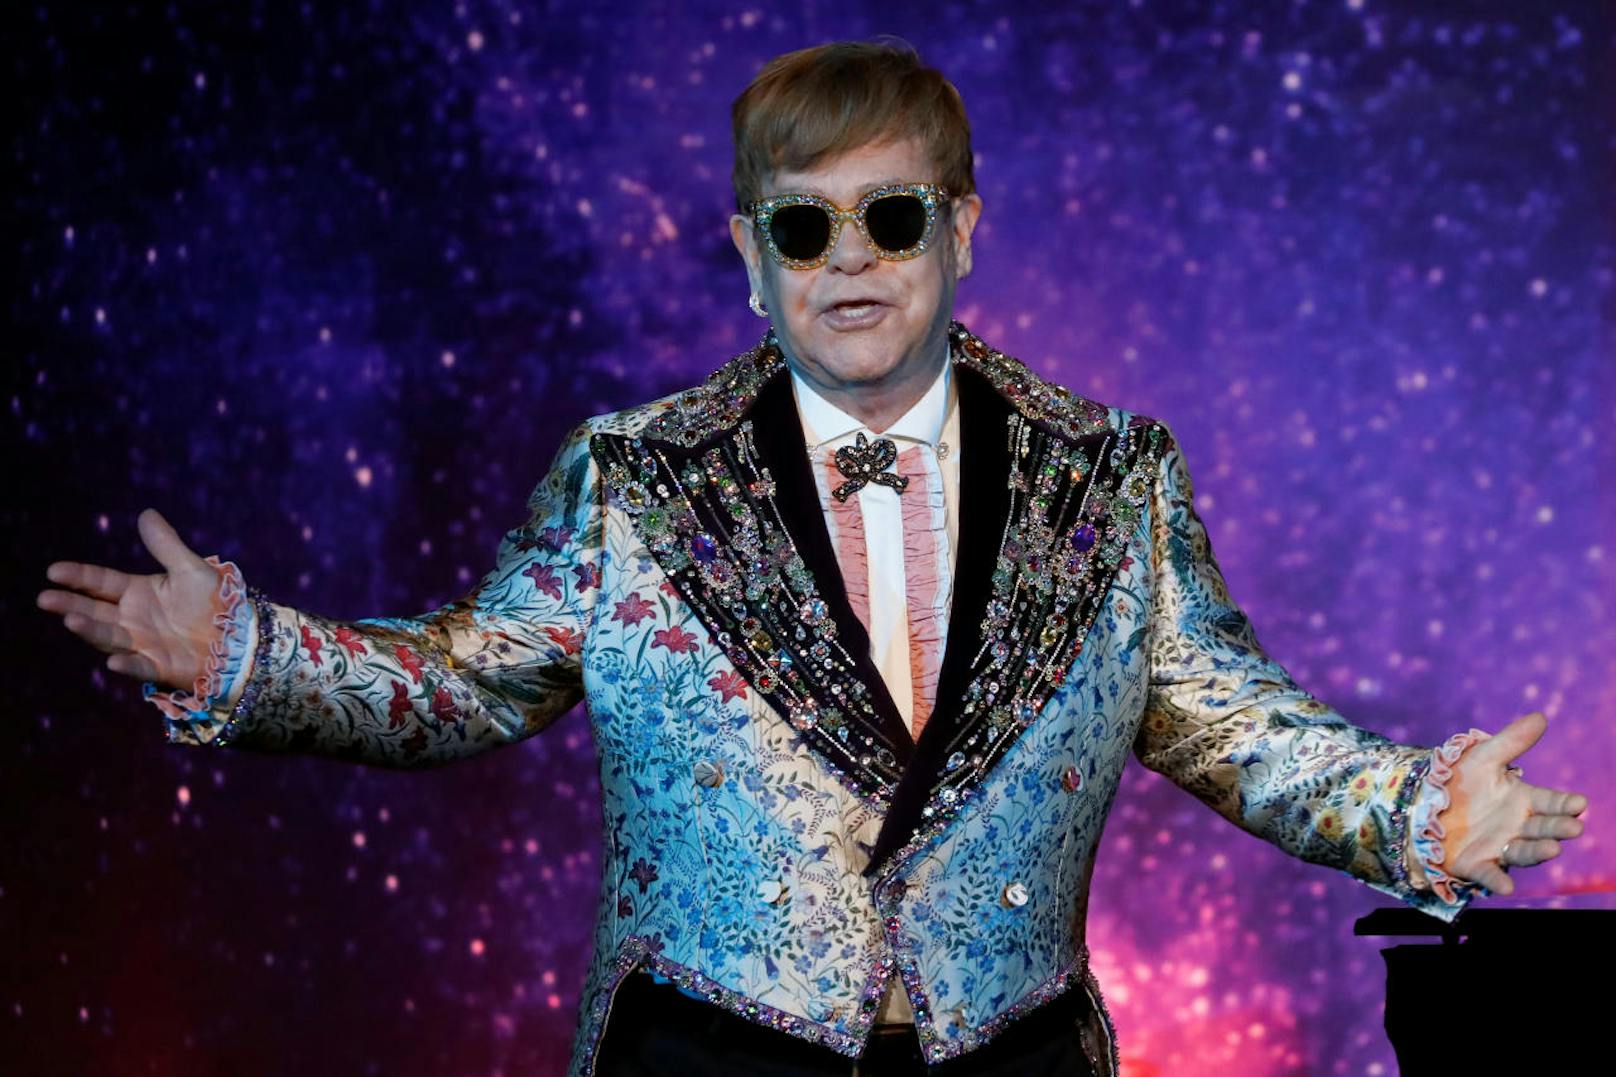 Die Exfrau von Musik-Ikone <strong>Elton John</strong> hat einen Antrag auf Erlass einer einstweiligen Verfügung gegen den Sänger gestellt.